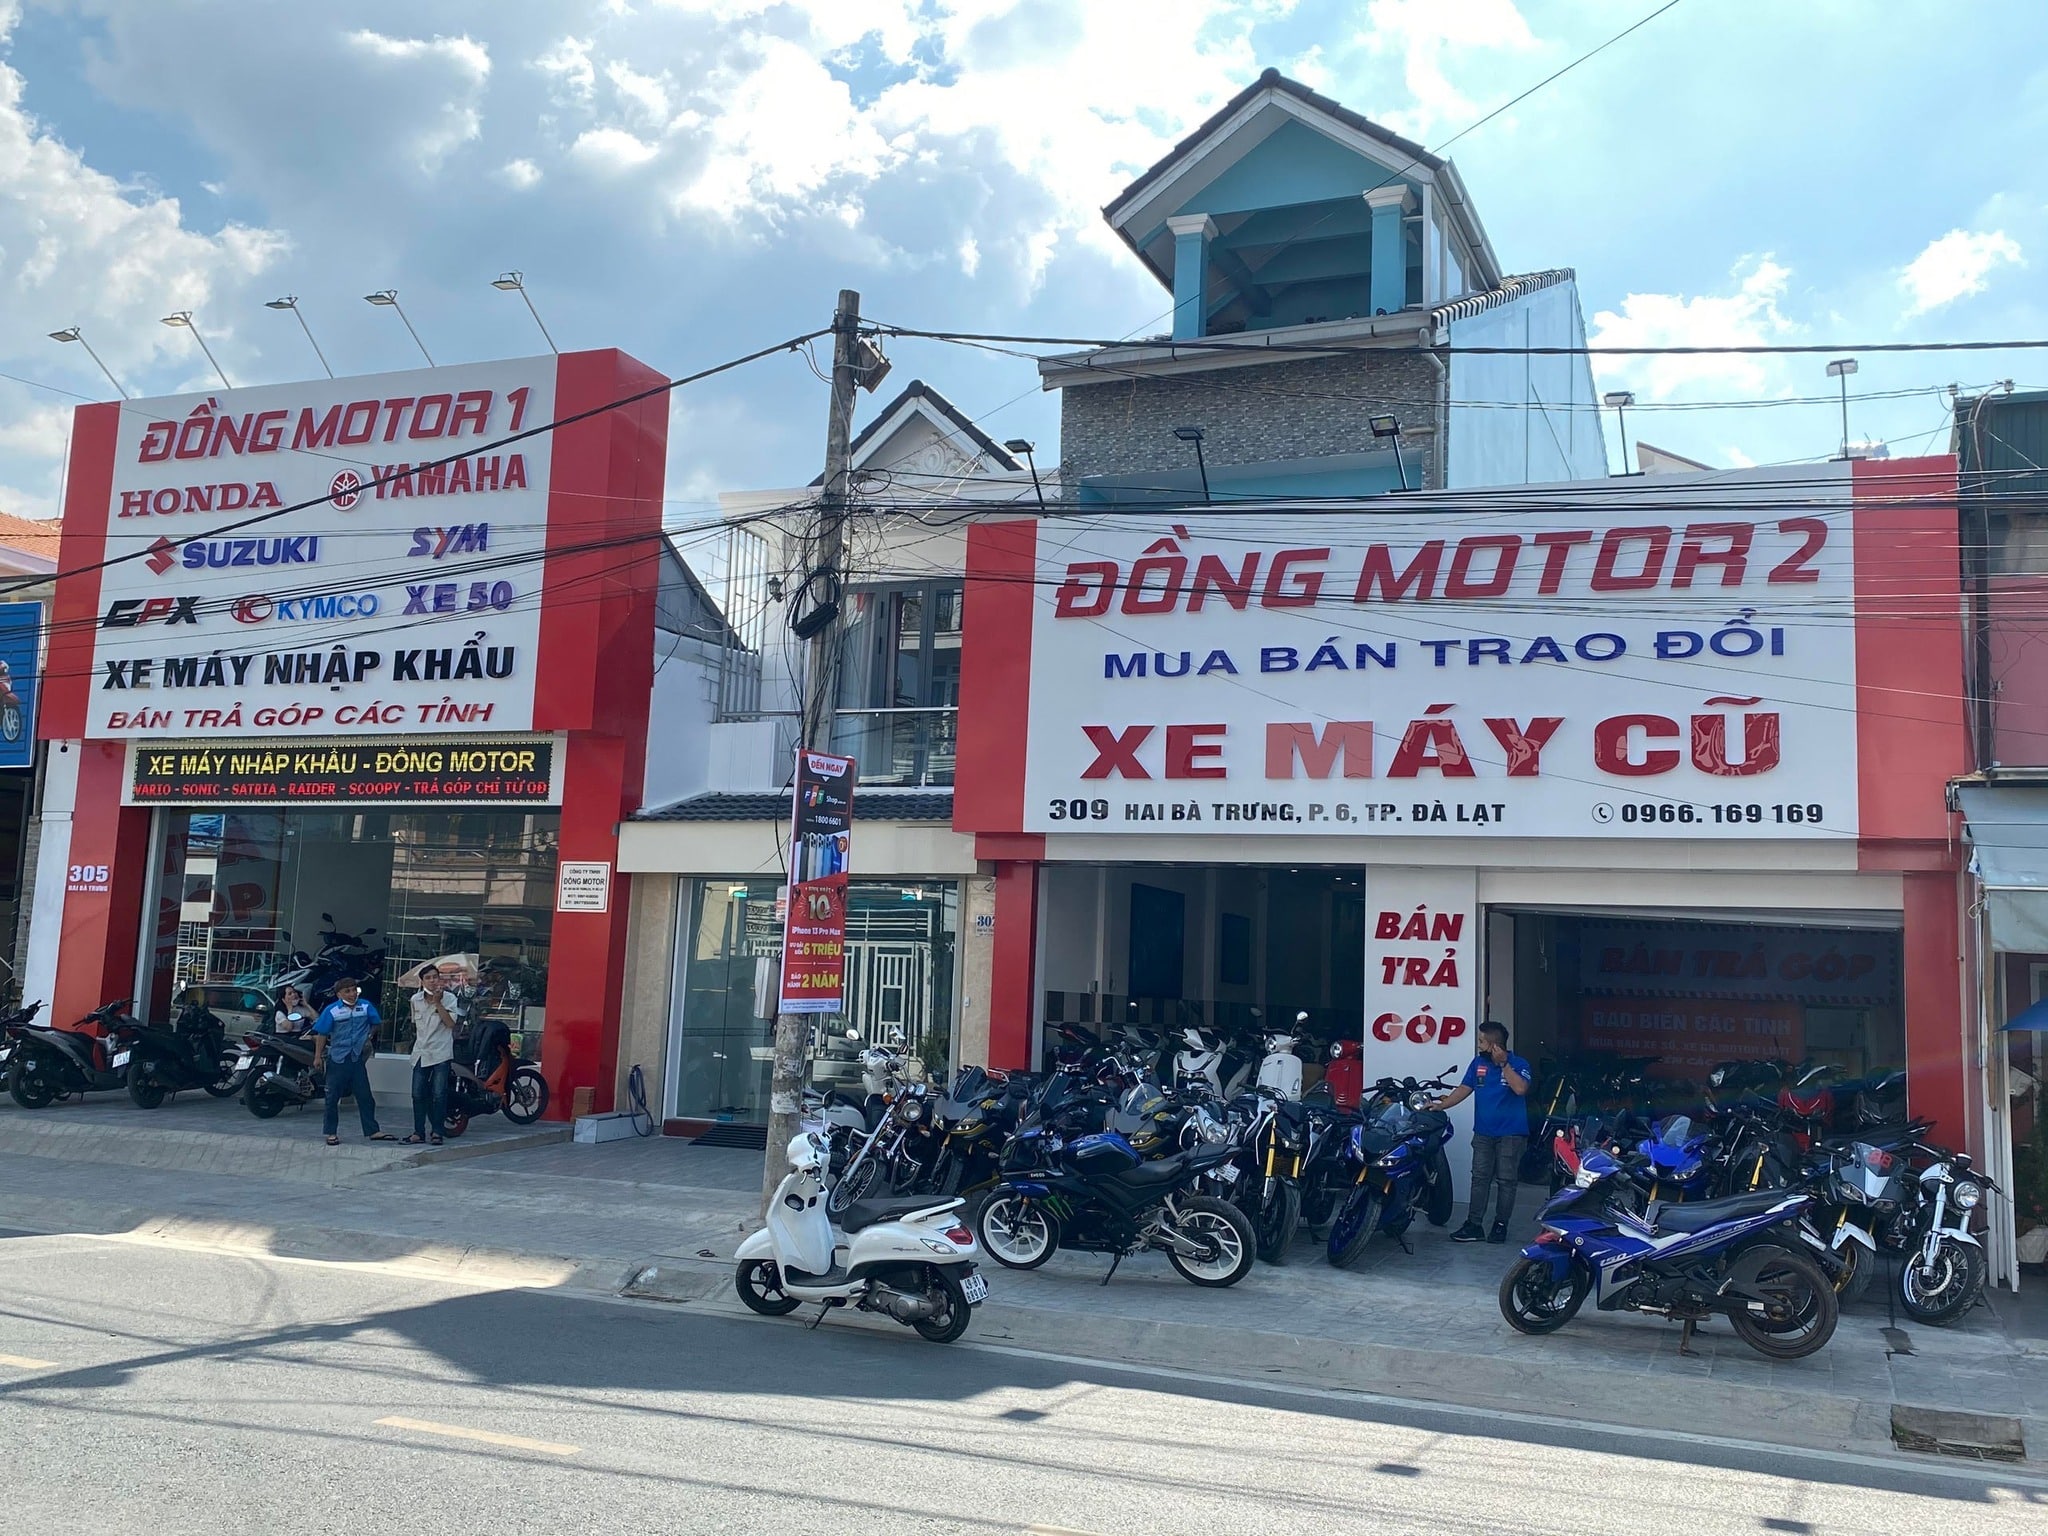 Mua bán trao đổi rao vặt xe máy cũ mới chính chủ tại Đơn Dương   Chugiongcom